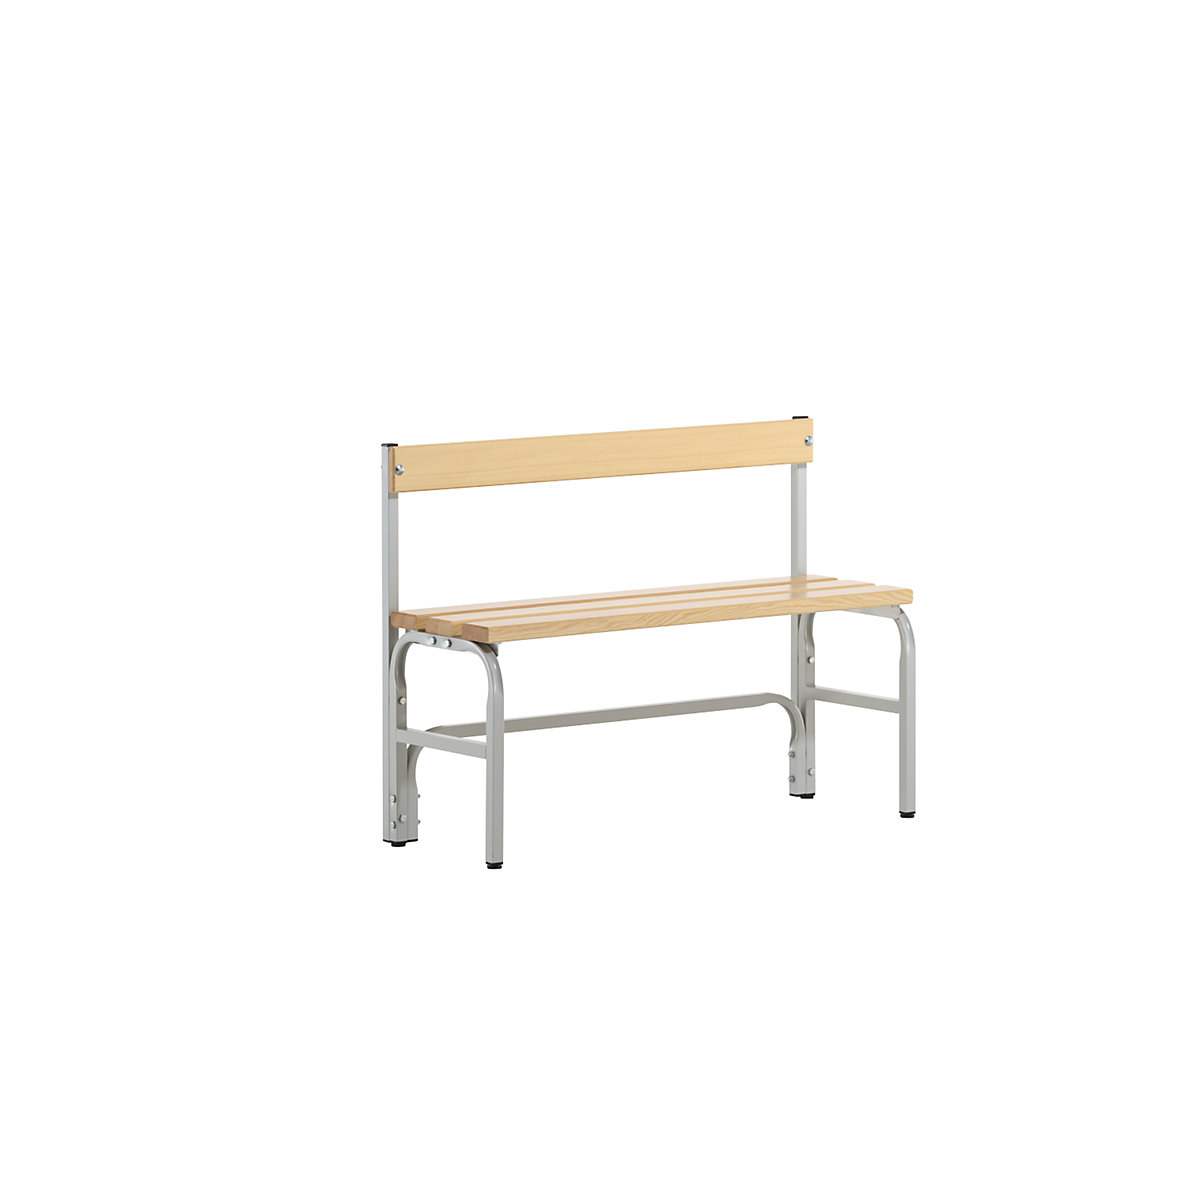 Panca per spogliatoi, altezza media con schienale, un lato utile – Sypro, doghe in legno di pino, lunghezza 1015 mm, grigio chiaro